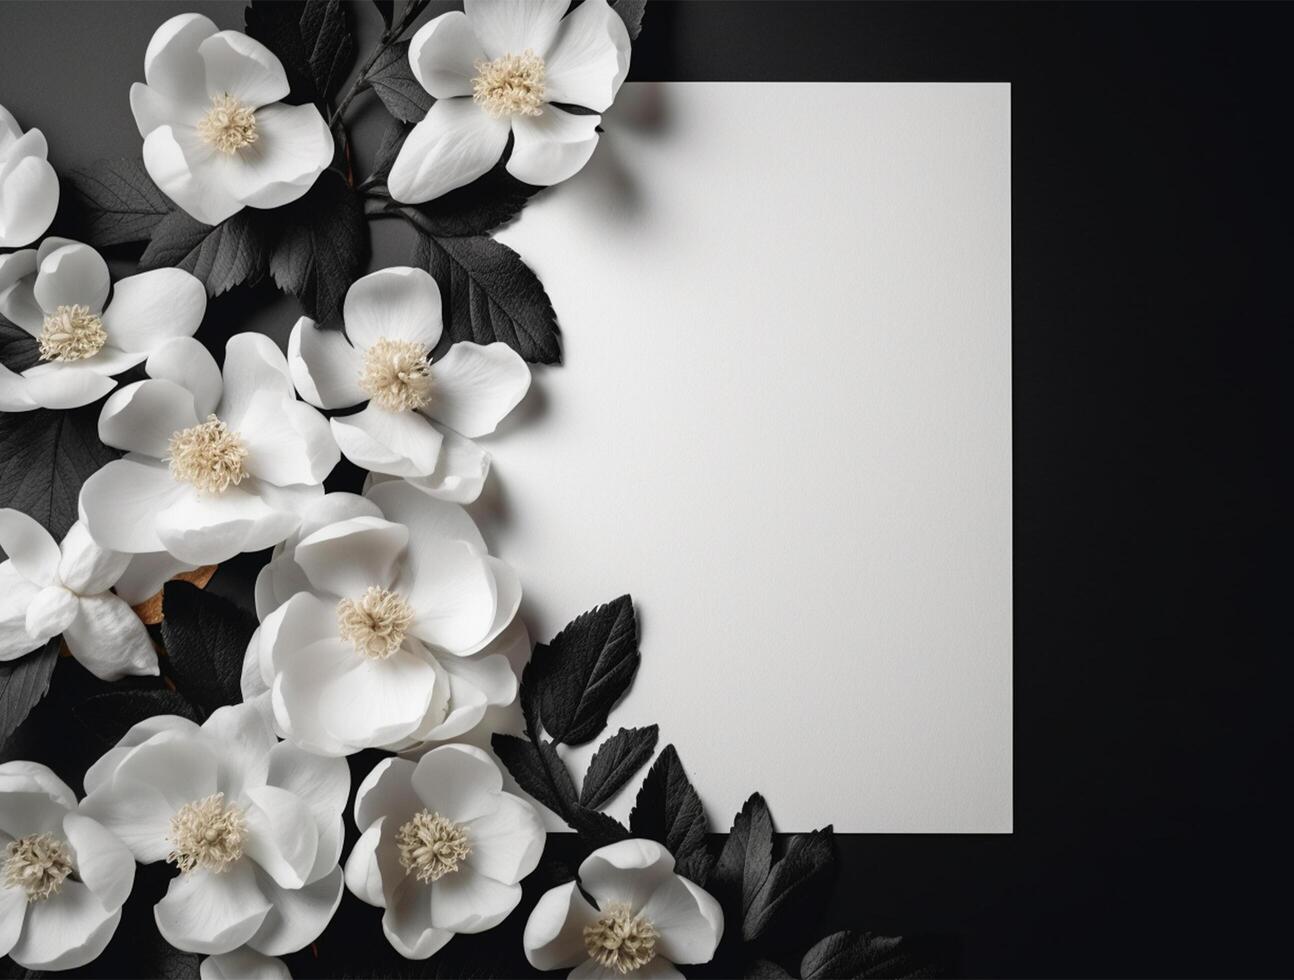 blanco papel con tropical hojas y flores plano poner, parte superior vista, Copiar espacio ai generado foto